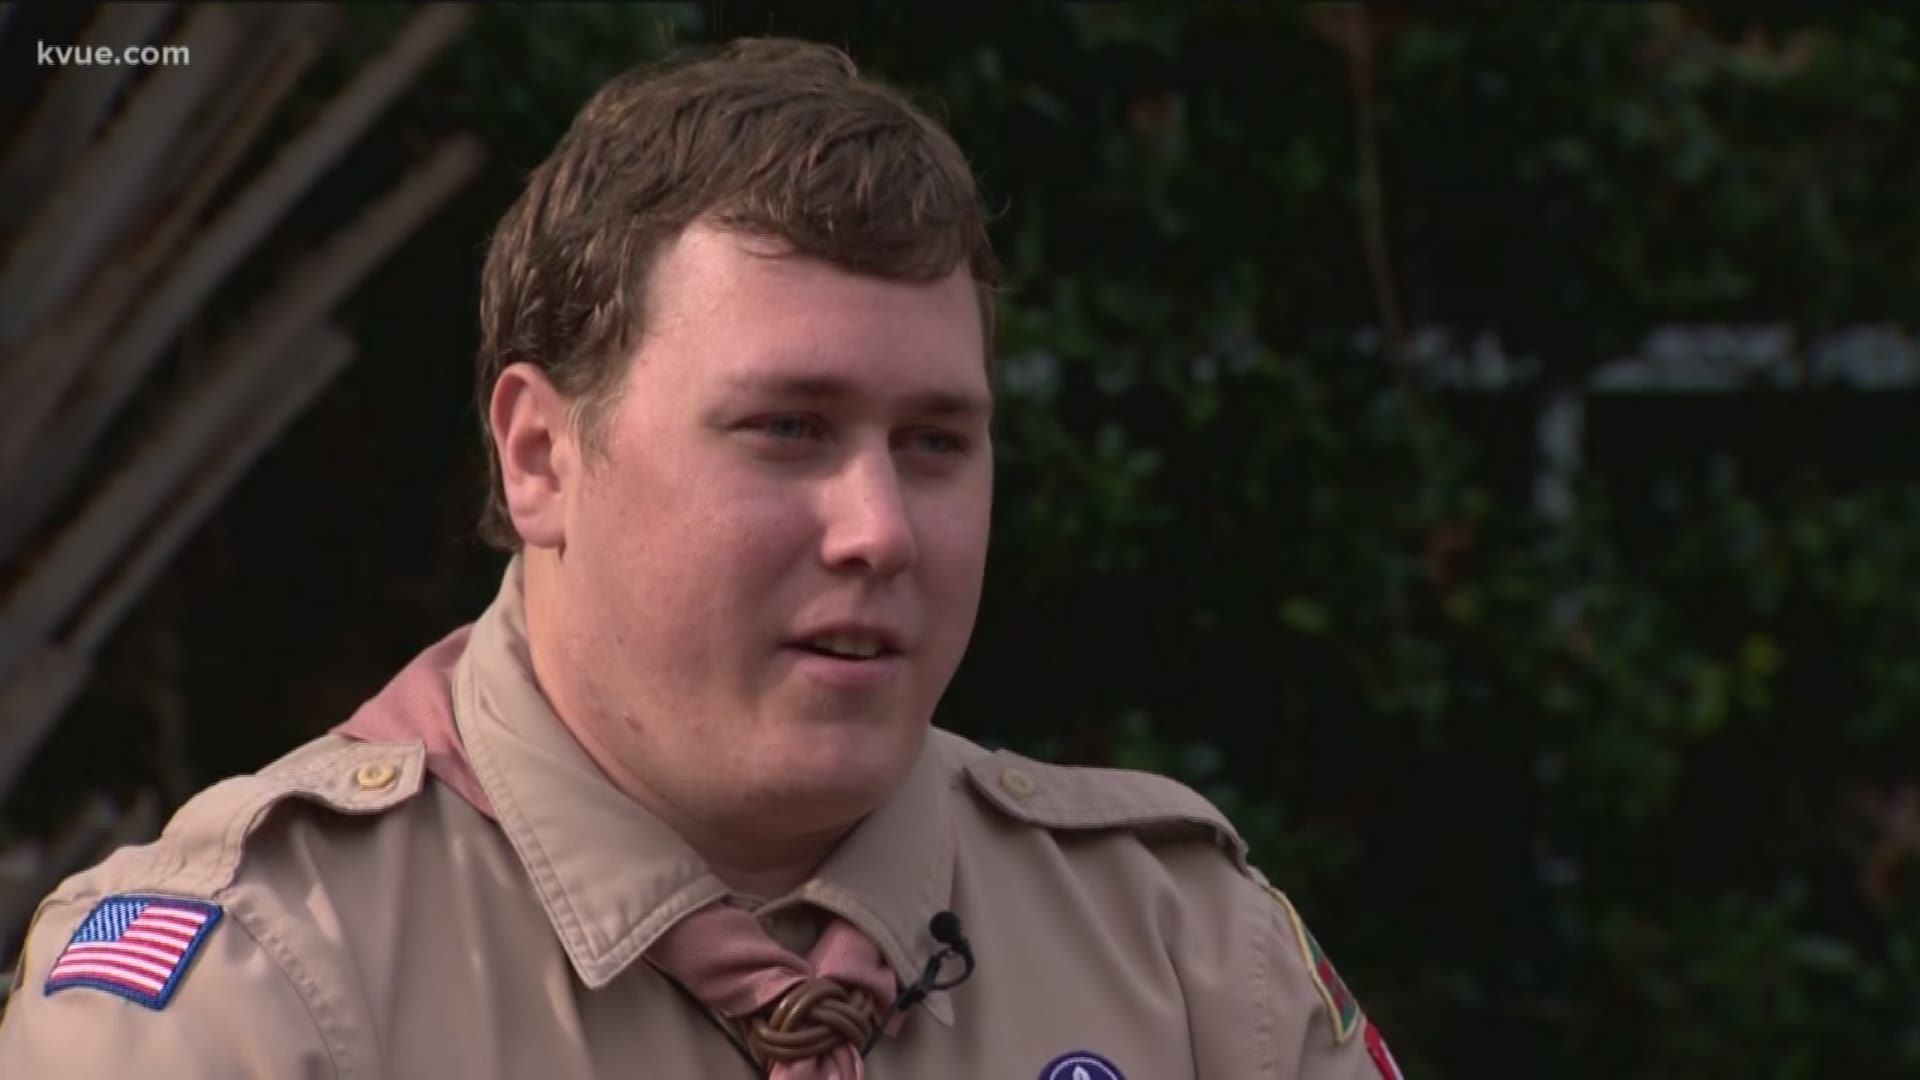 Sean Gingrass rallied around his fellow scouts to beat leukemia